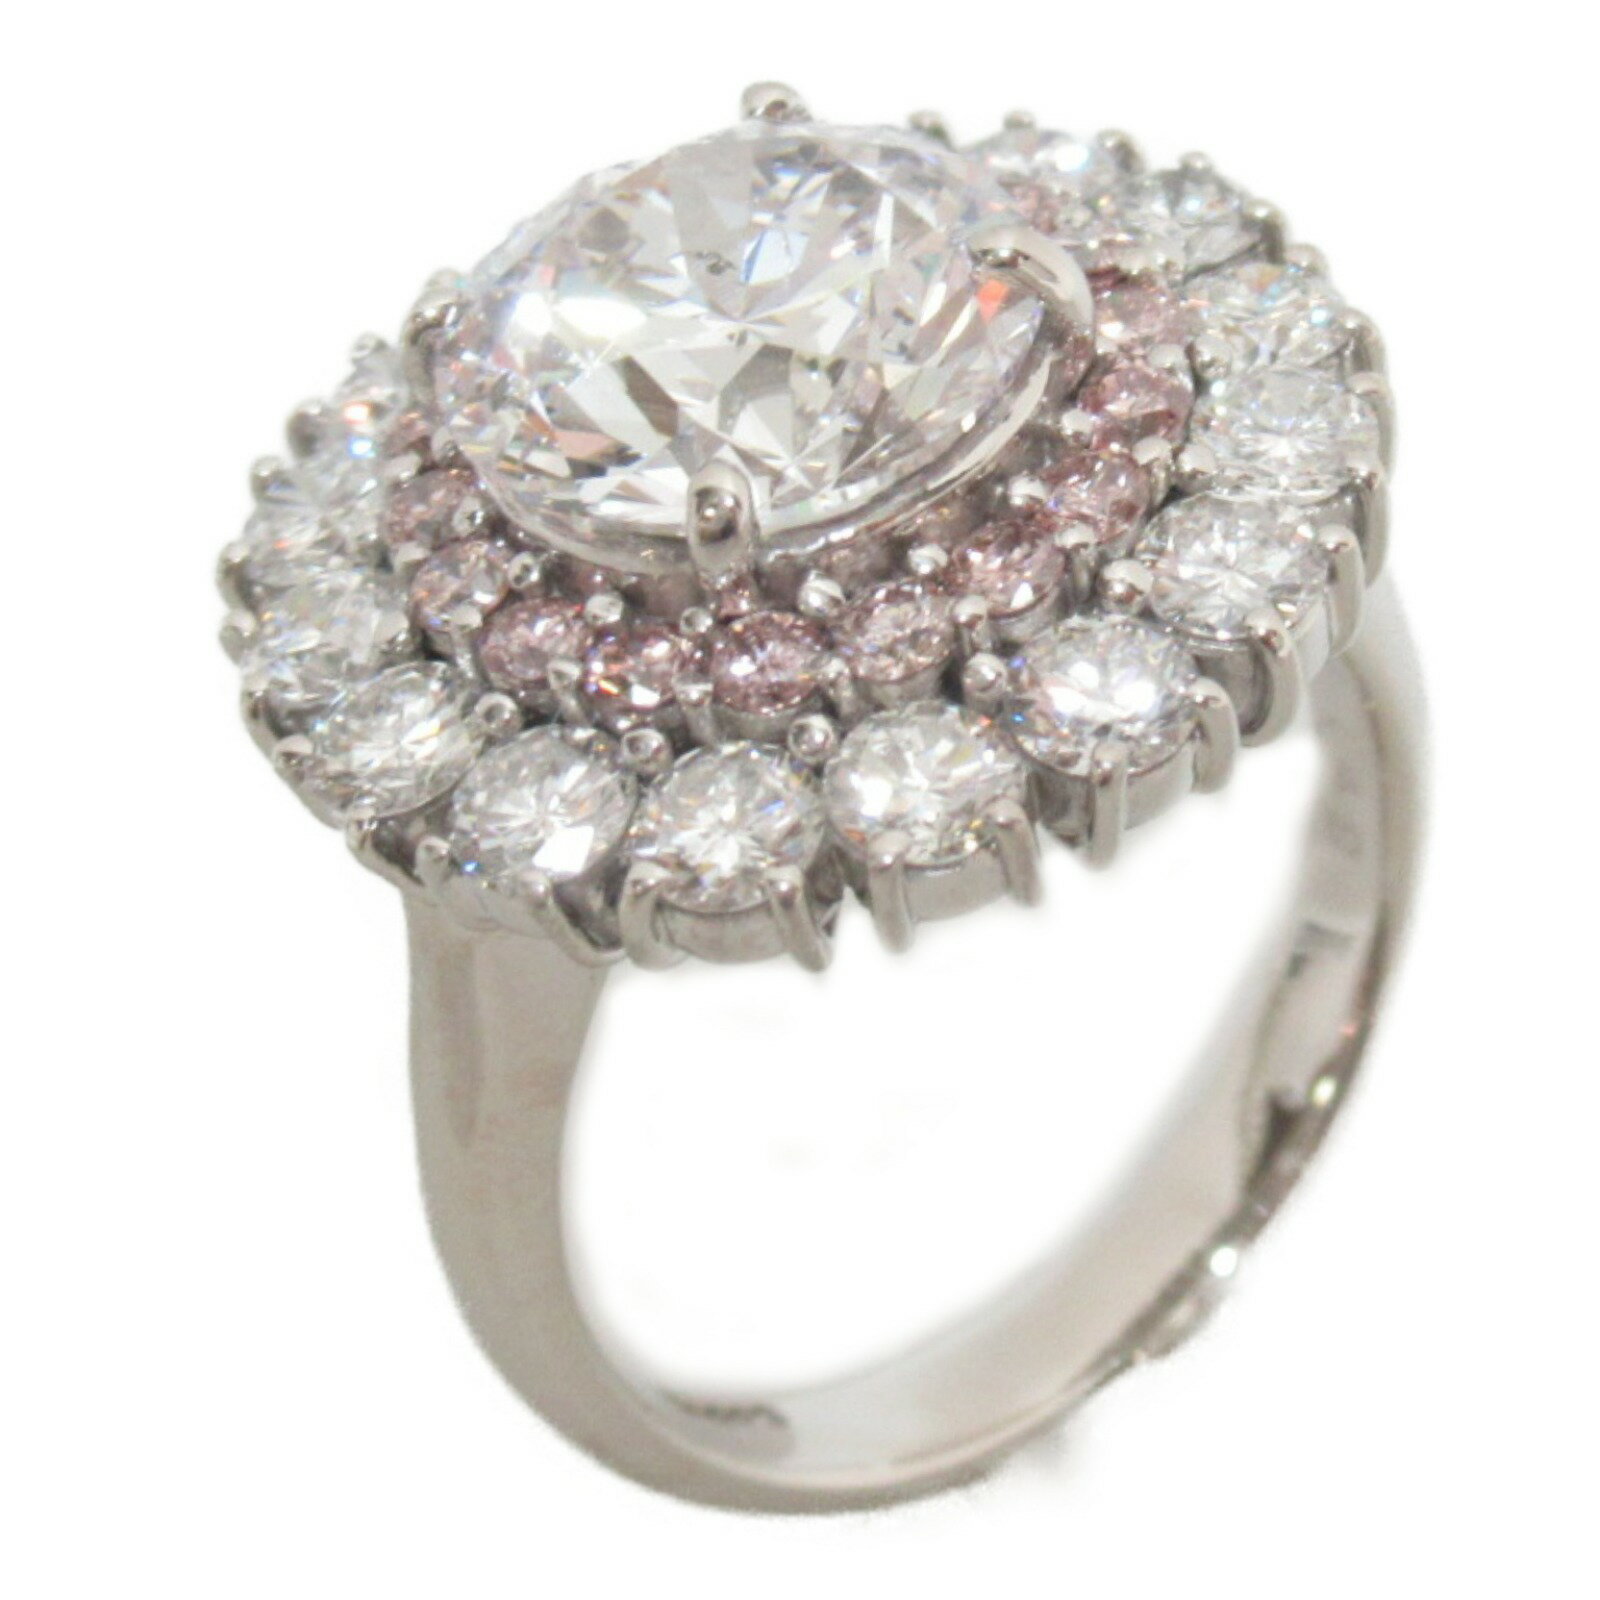 ジュエリー JEWELRY ダイヤモンドリング リング・指輪 ダイヤモンド Pt900プラチナ レディース クリア系 FP ダイヤ 10.5g 【中古】 | ブランド アクセサリー 指輪 リング